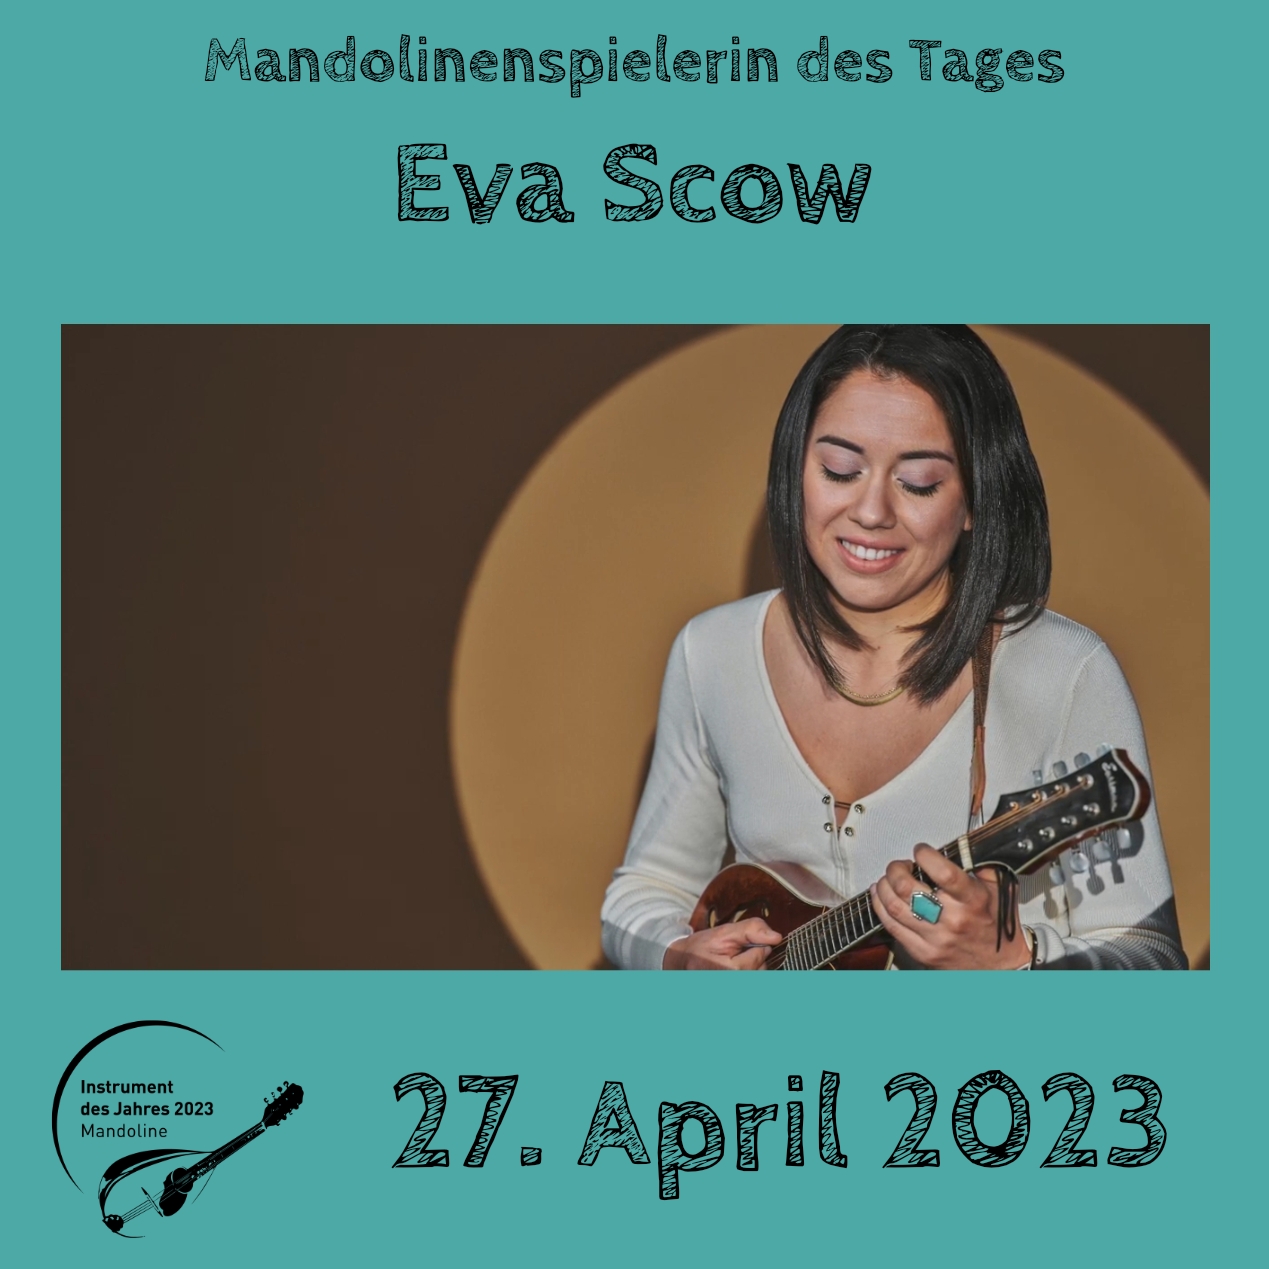 Eva Scow Instrument des Jahres 2023 Mandolinenspieler Mandolinenspielerin des Tages